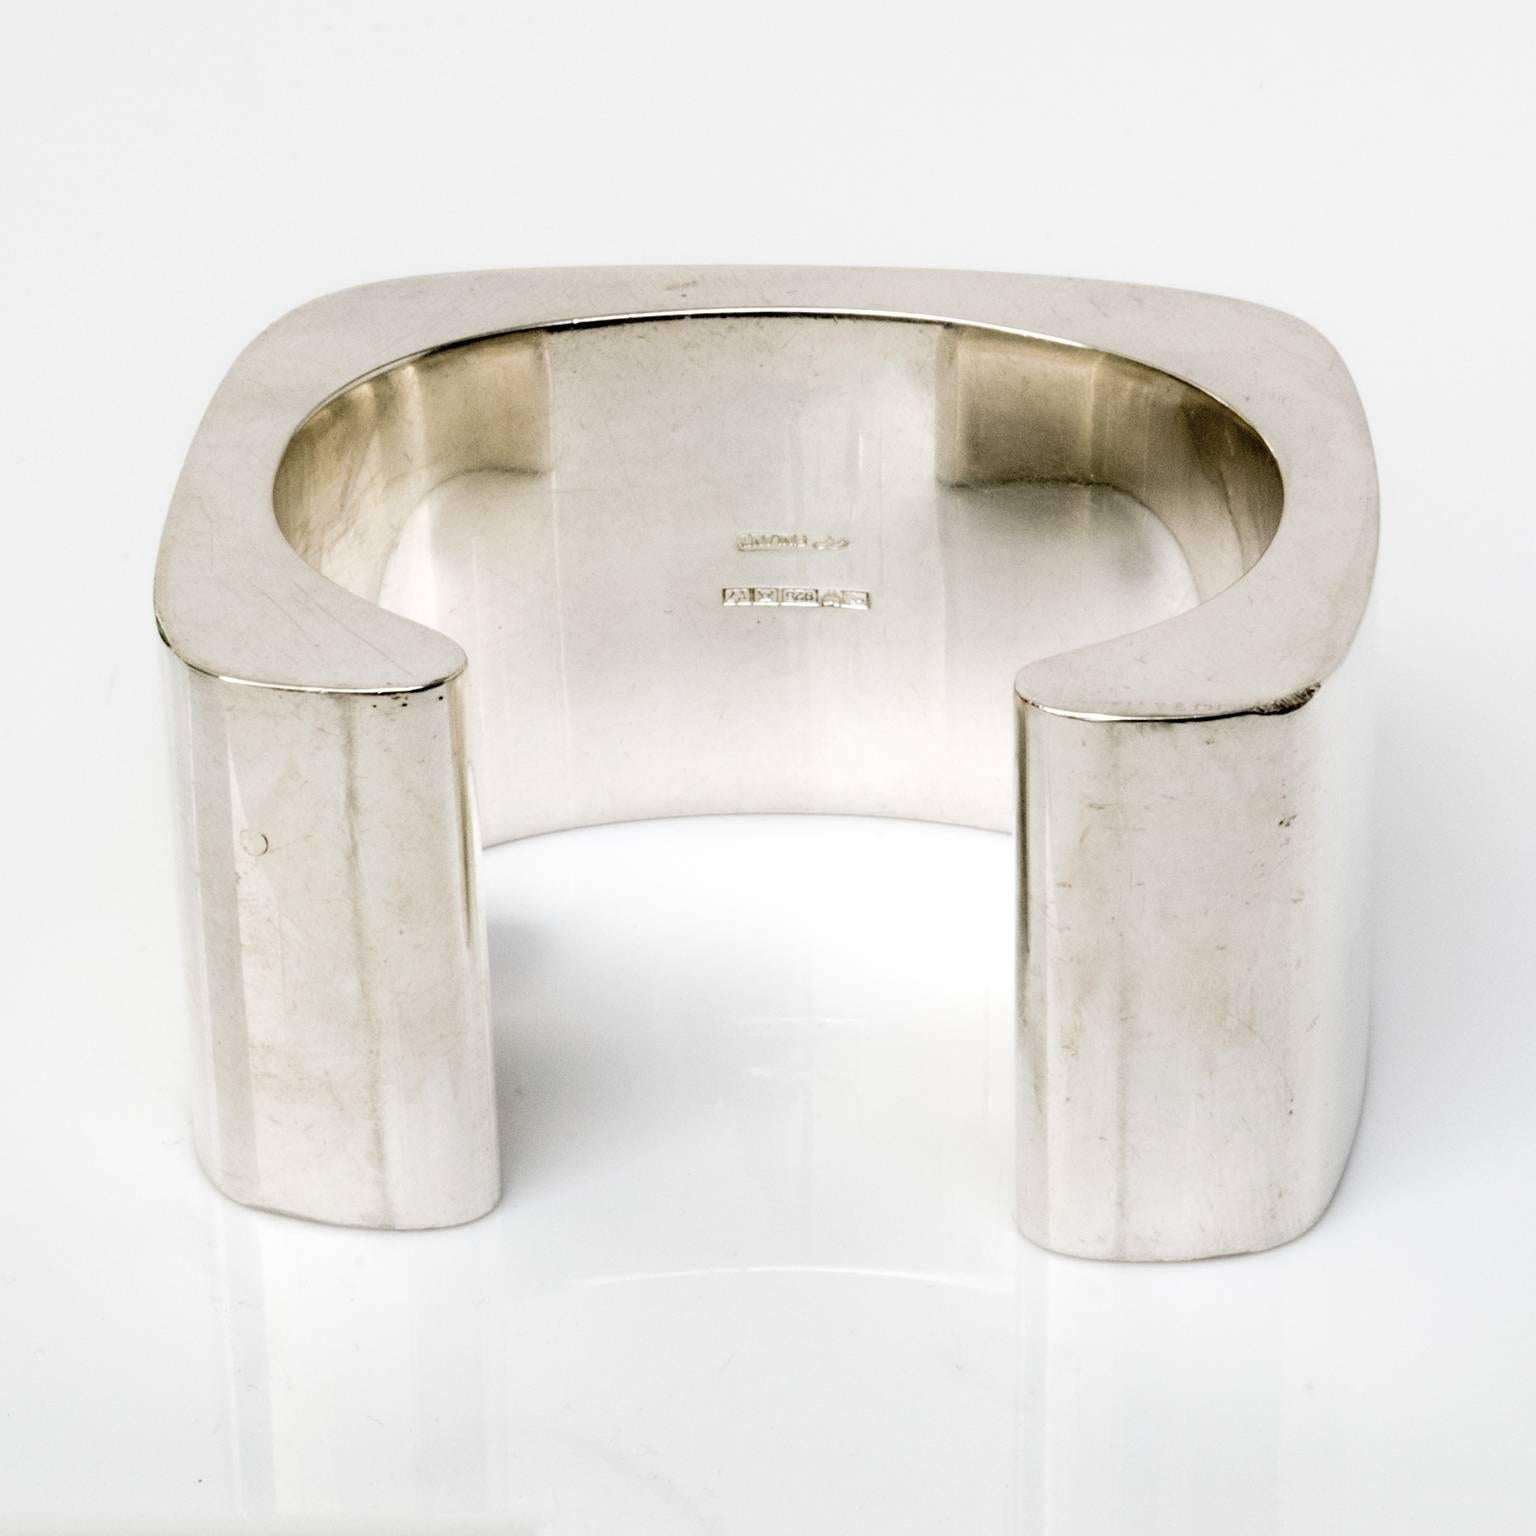 Modern Sterling silver cuff bracelet by Pekka Piekainen, Finland.